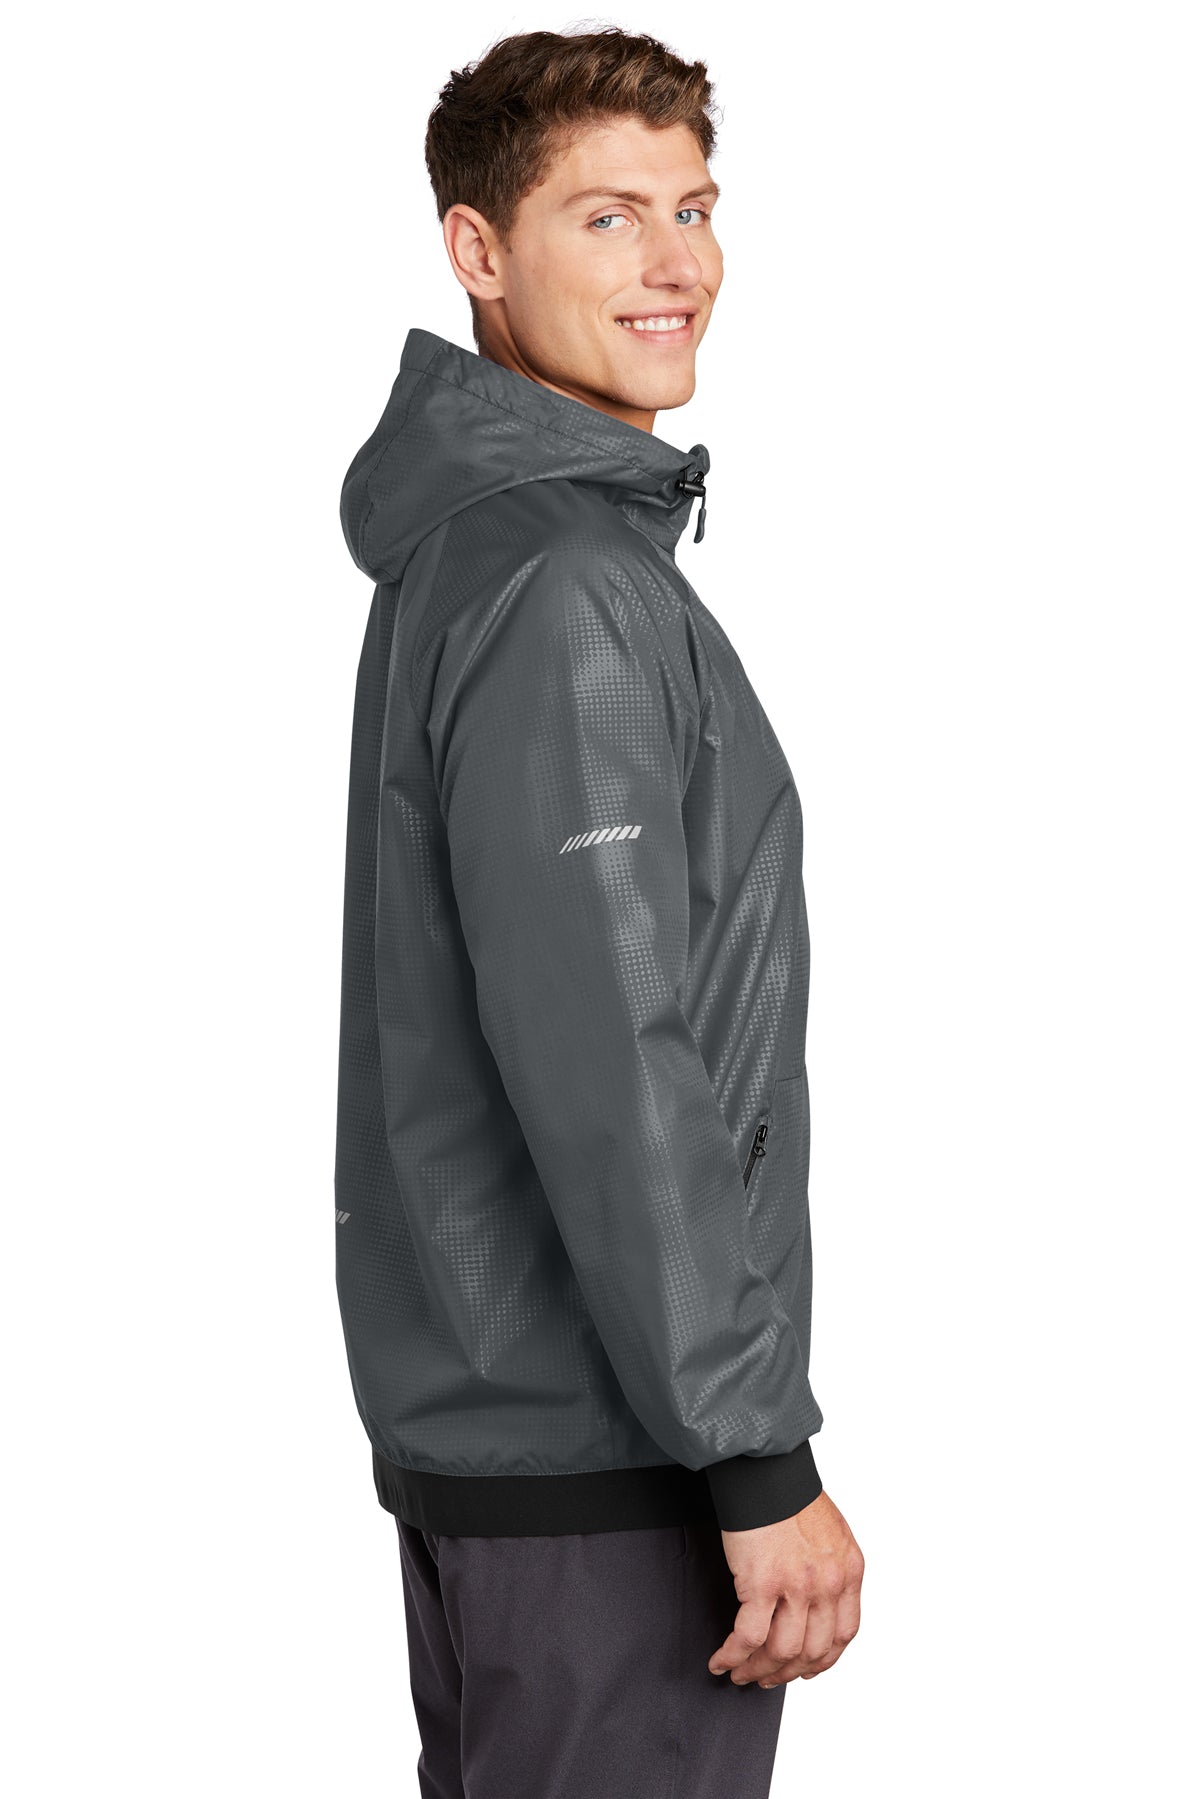 sport-tek_jst53 _graphite/ black_company_logo_jackets